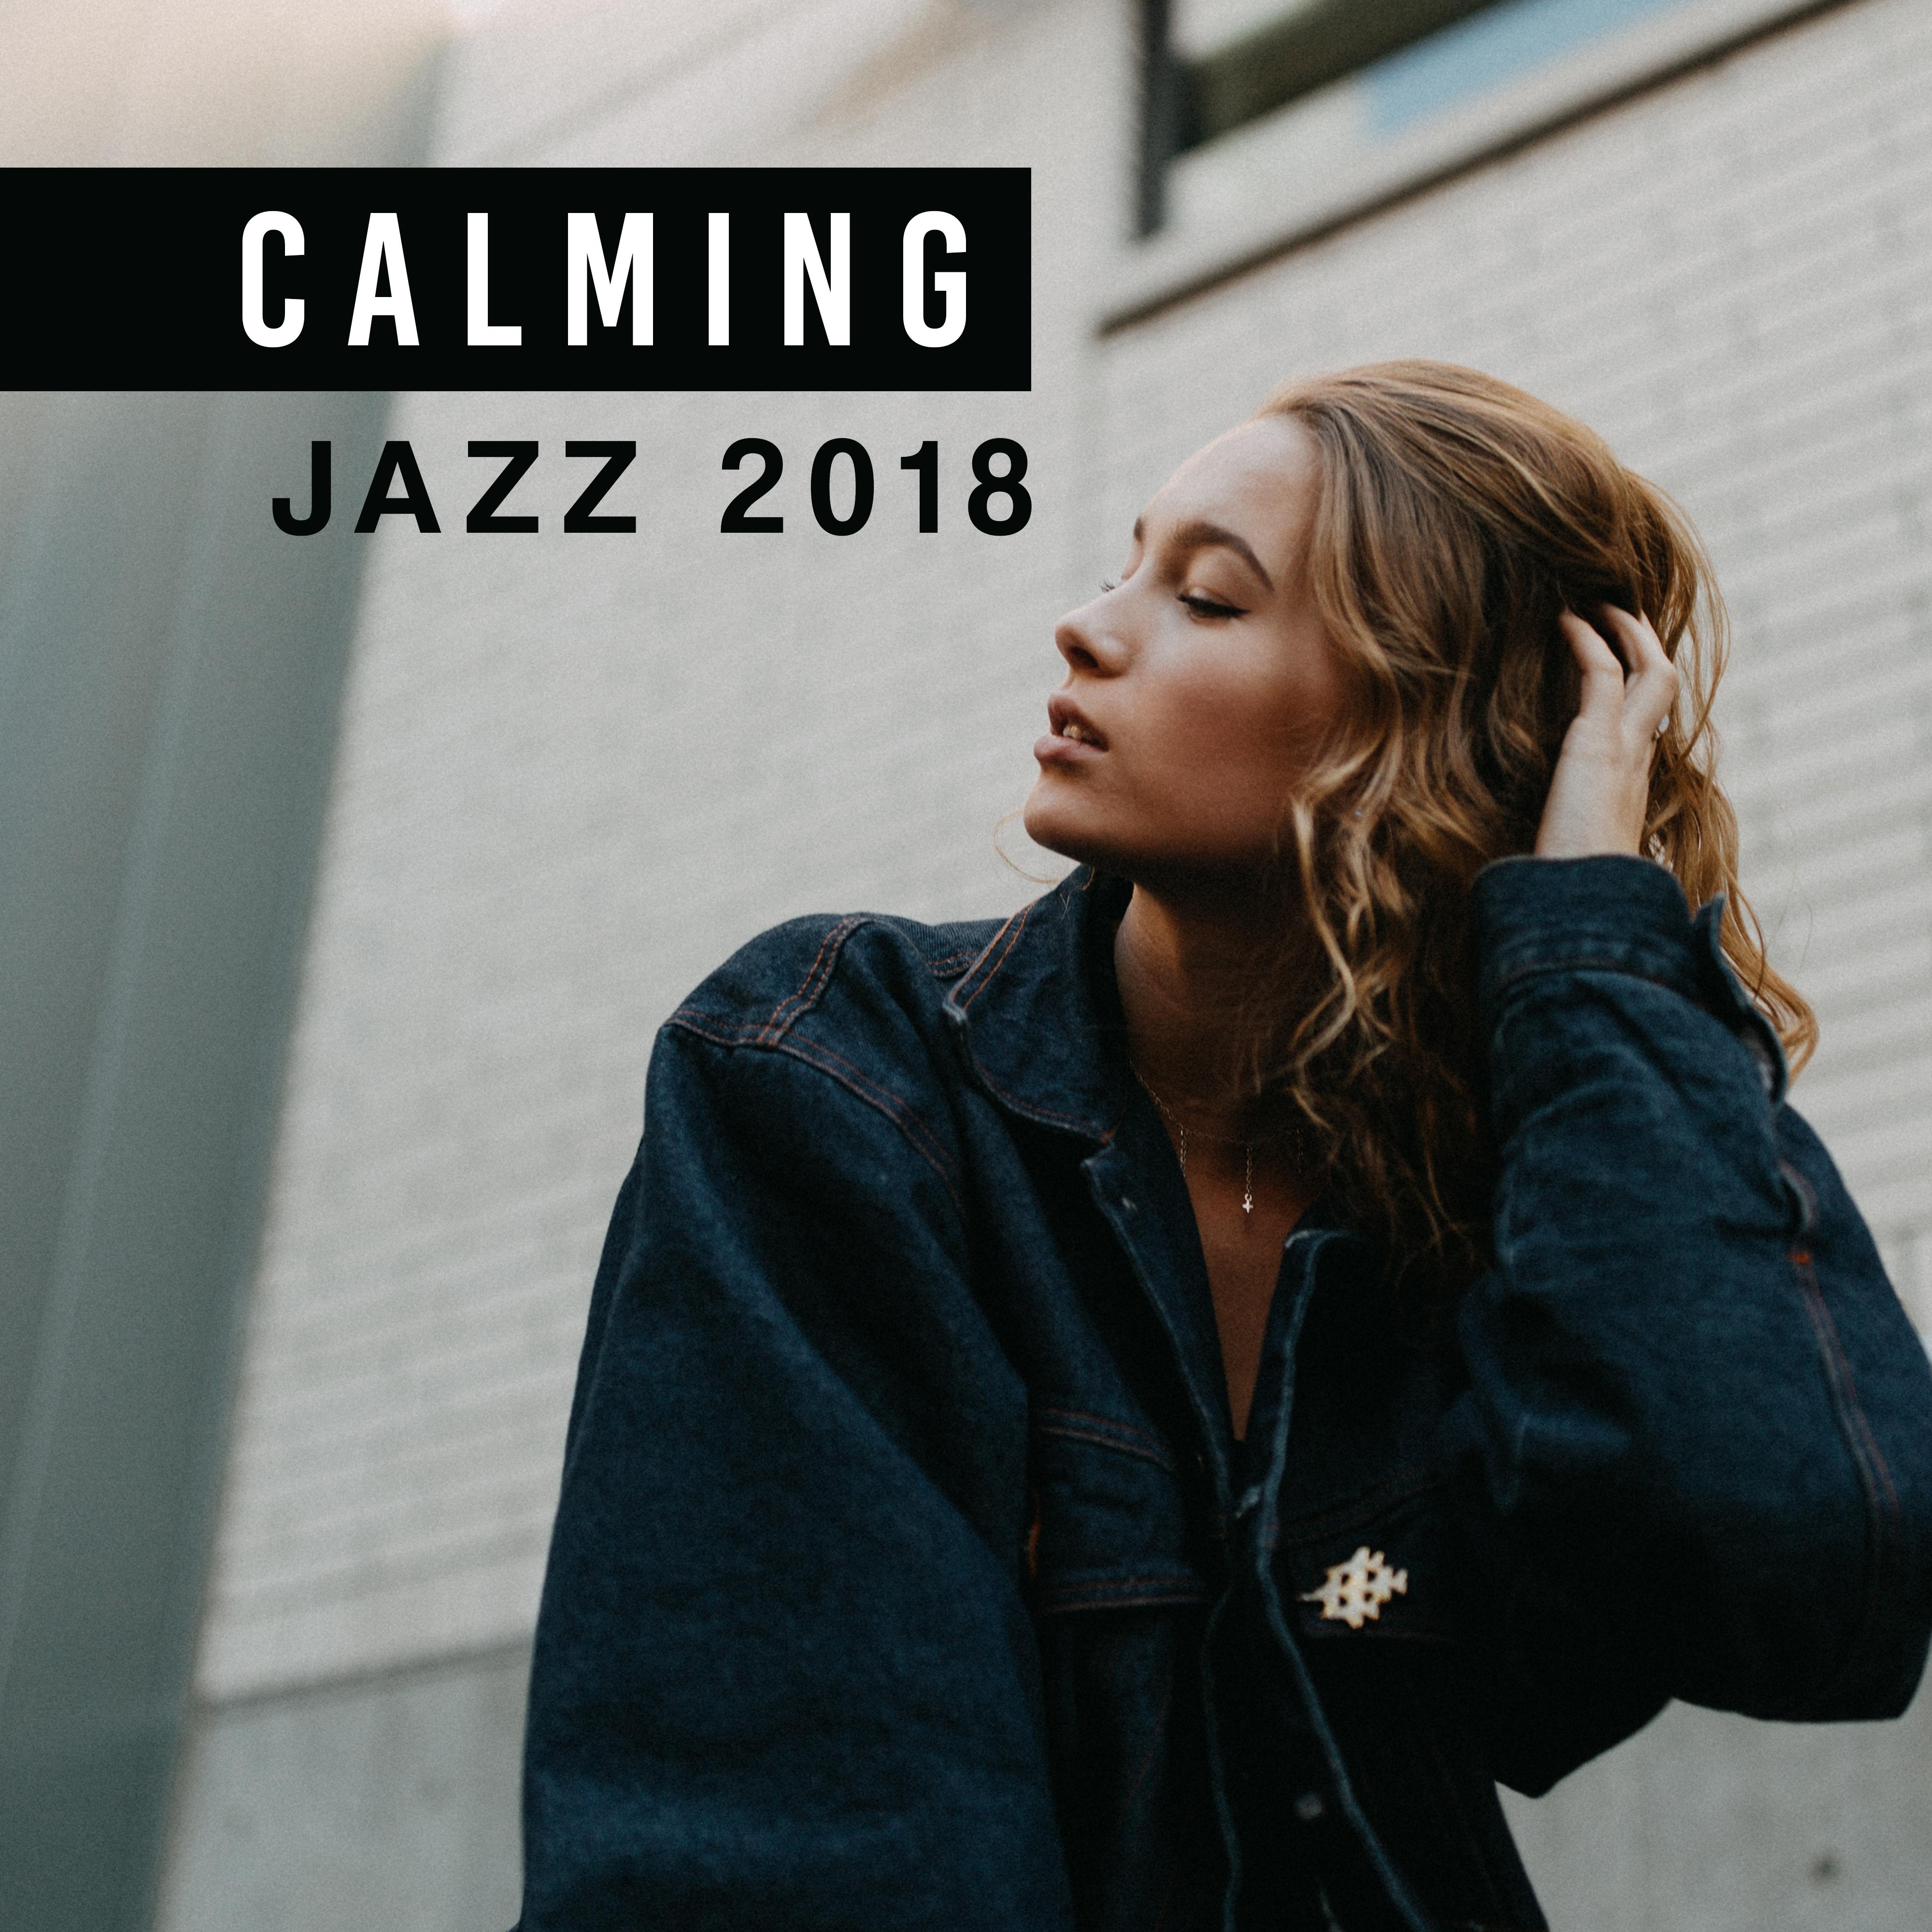 Calming Jazz 2018